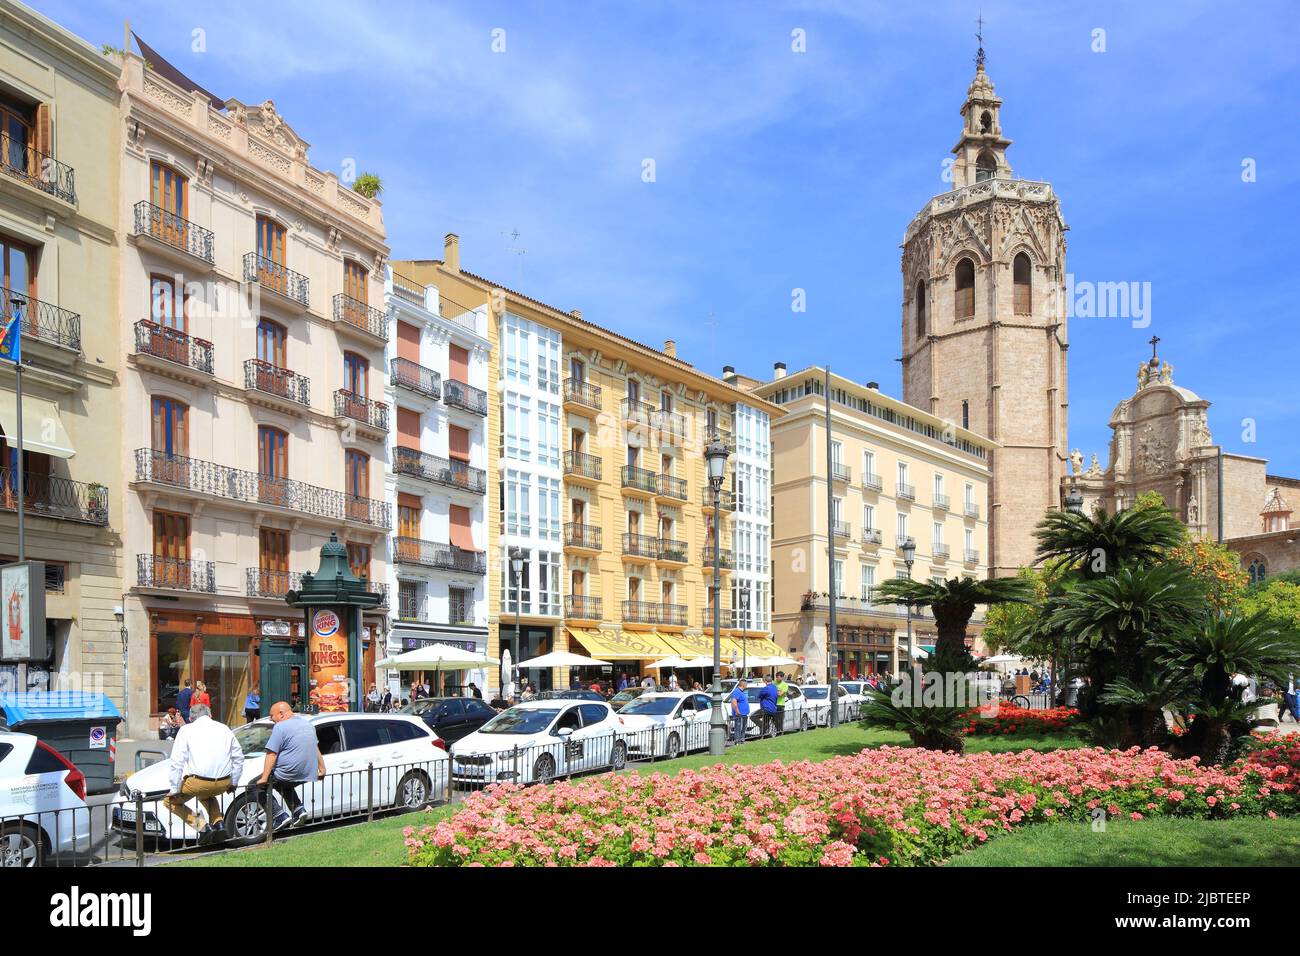 Espagne, Valence, Plaza de la Reina, façades de bâtiments avec en arrière-plan le clocher de la cathédrale (Micalet) de style gothique (1381-1424) surmonté d'un campanile du 18th siècle Banque D'Images